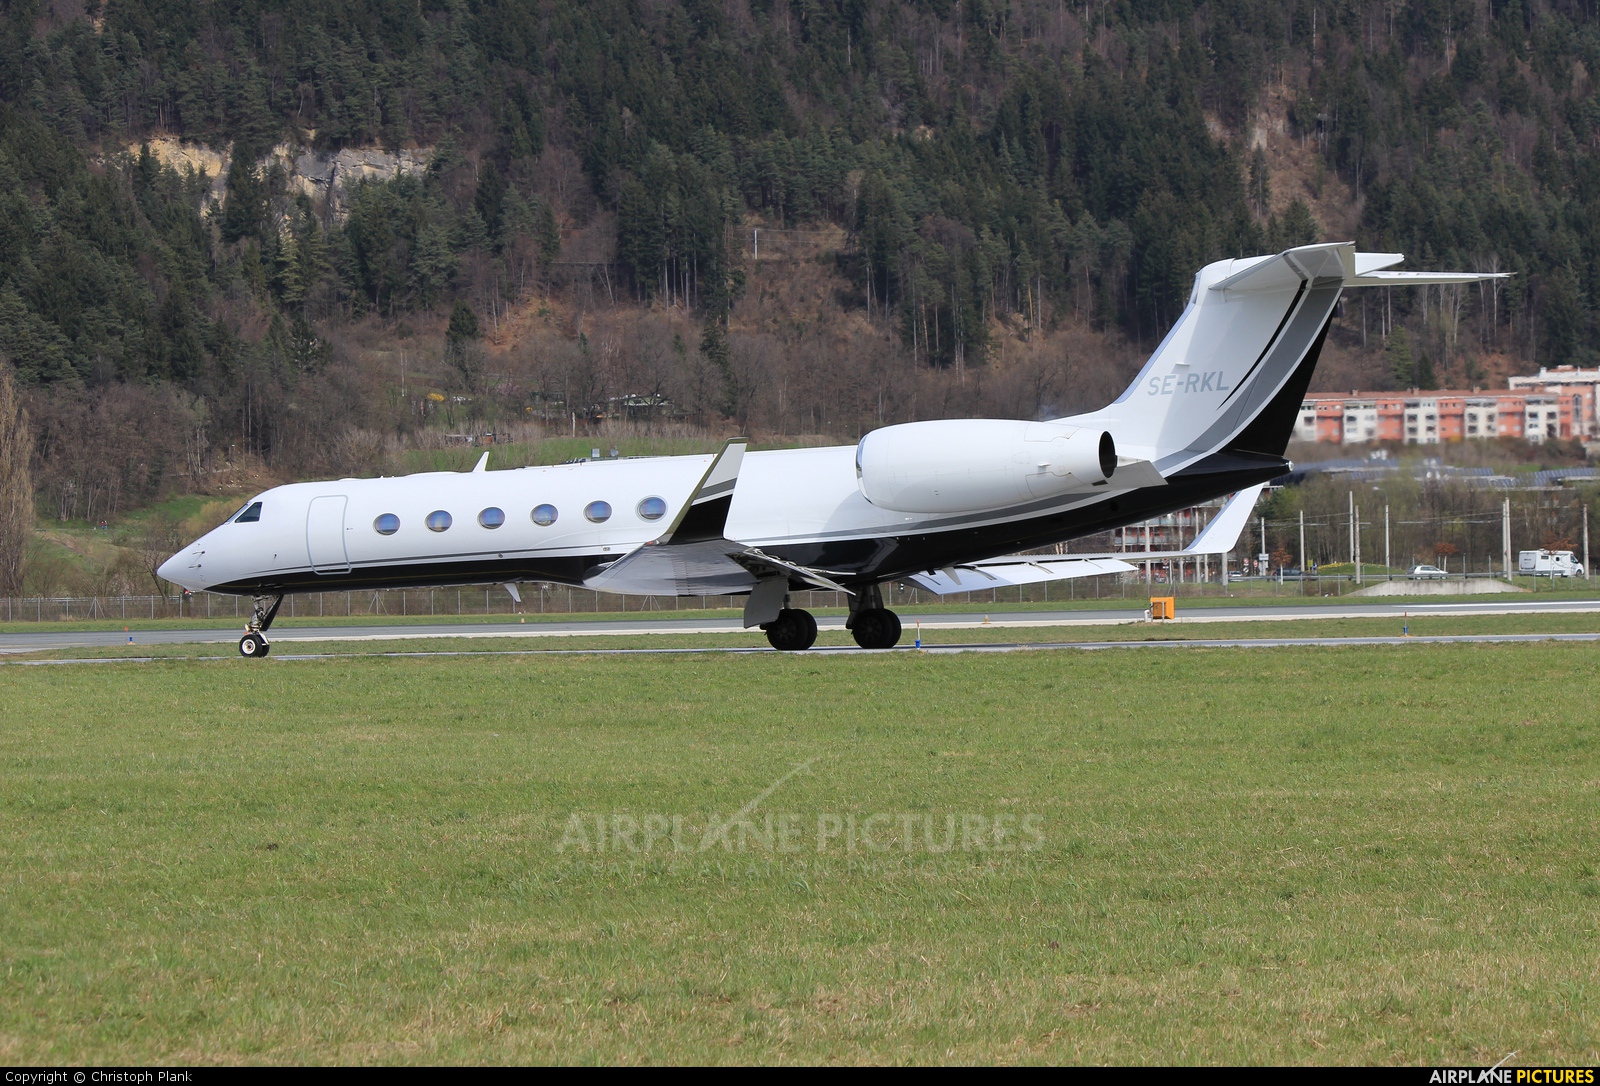 SAAB Aircraft Company SE-RKL aircraft at Innsbruck